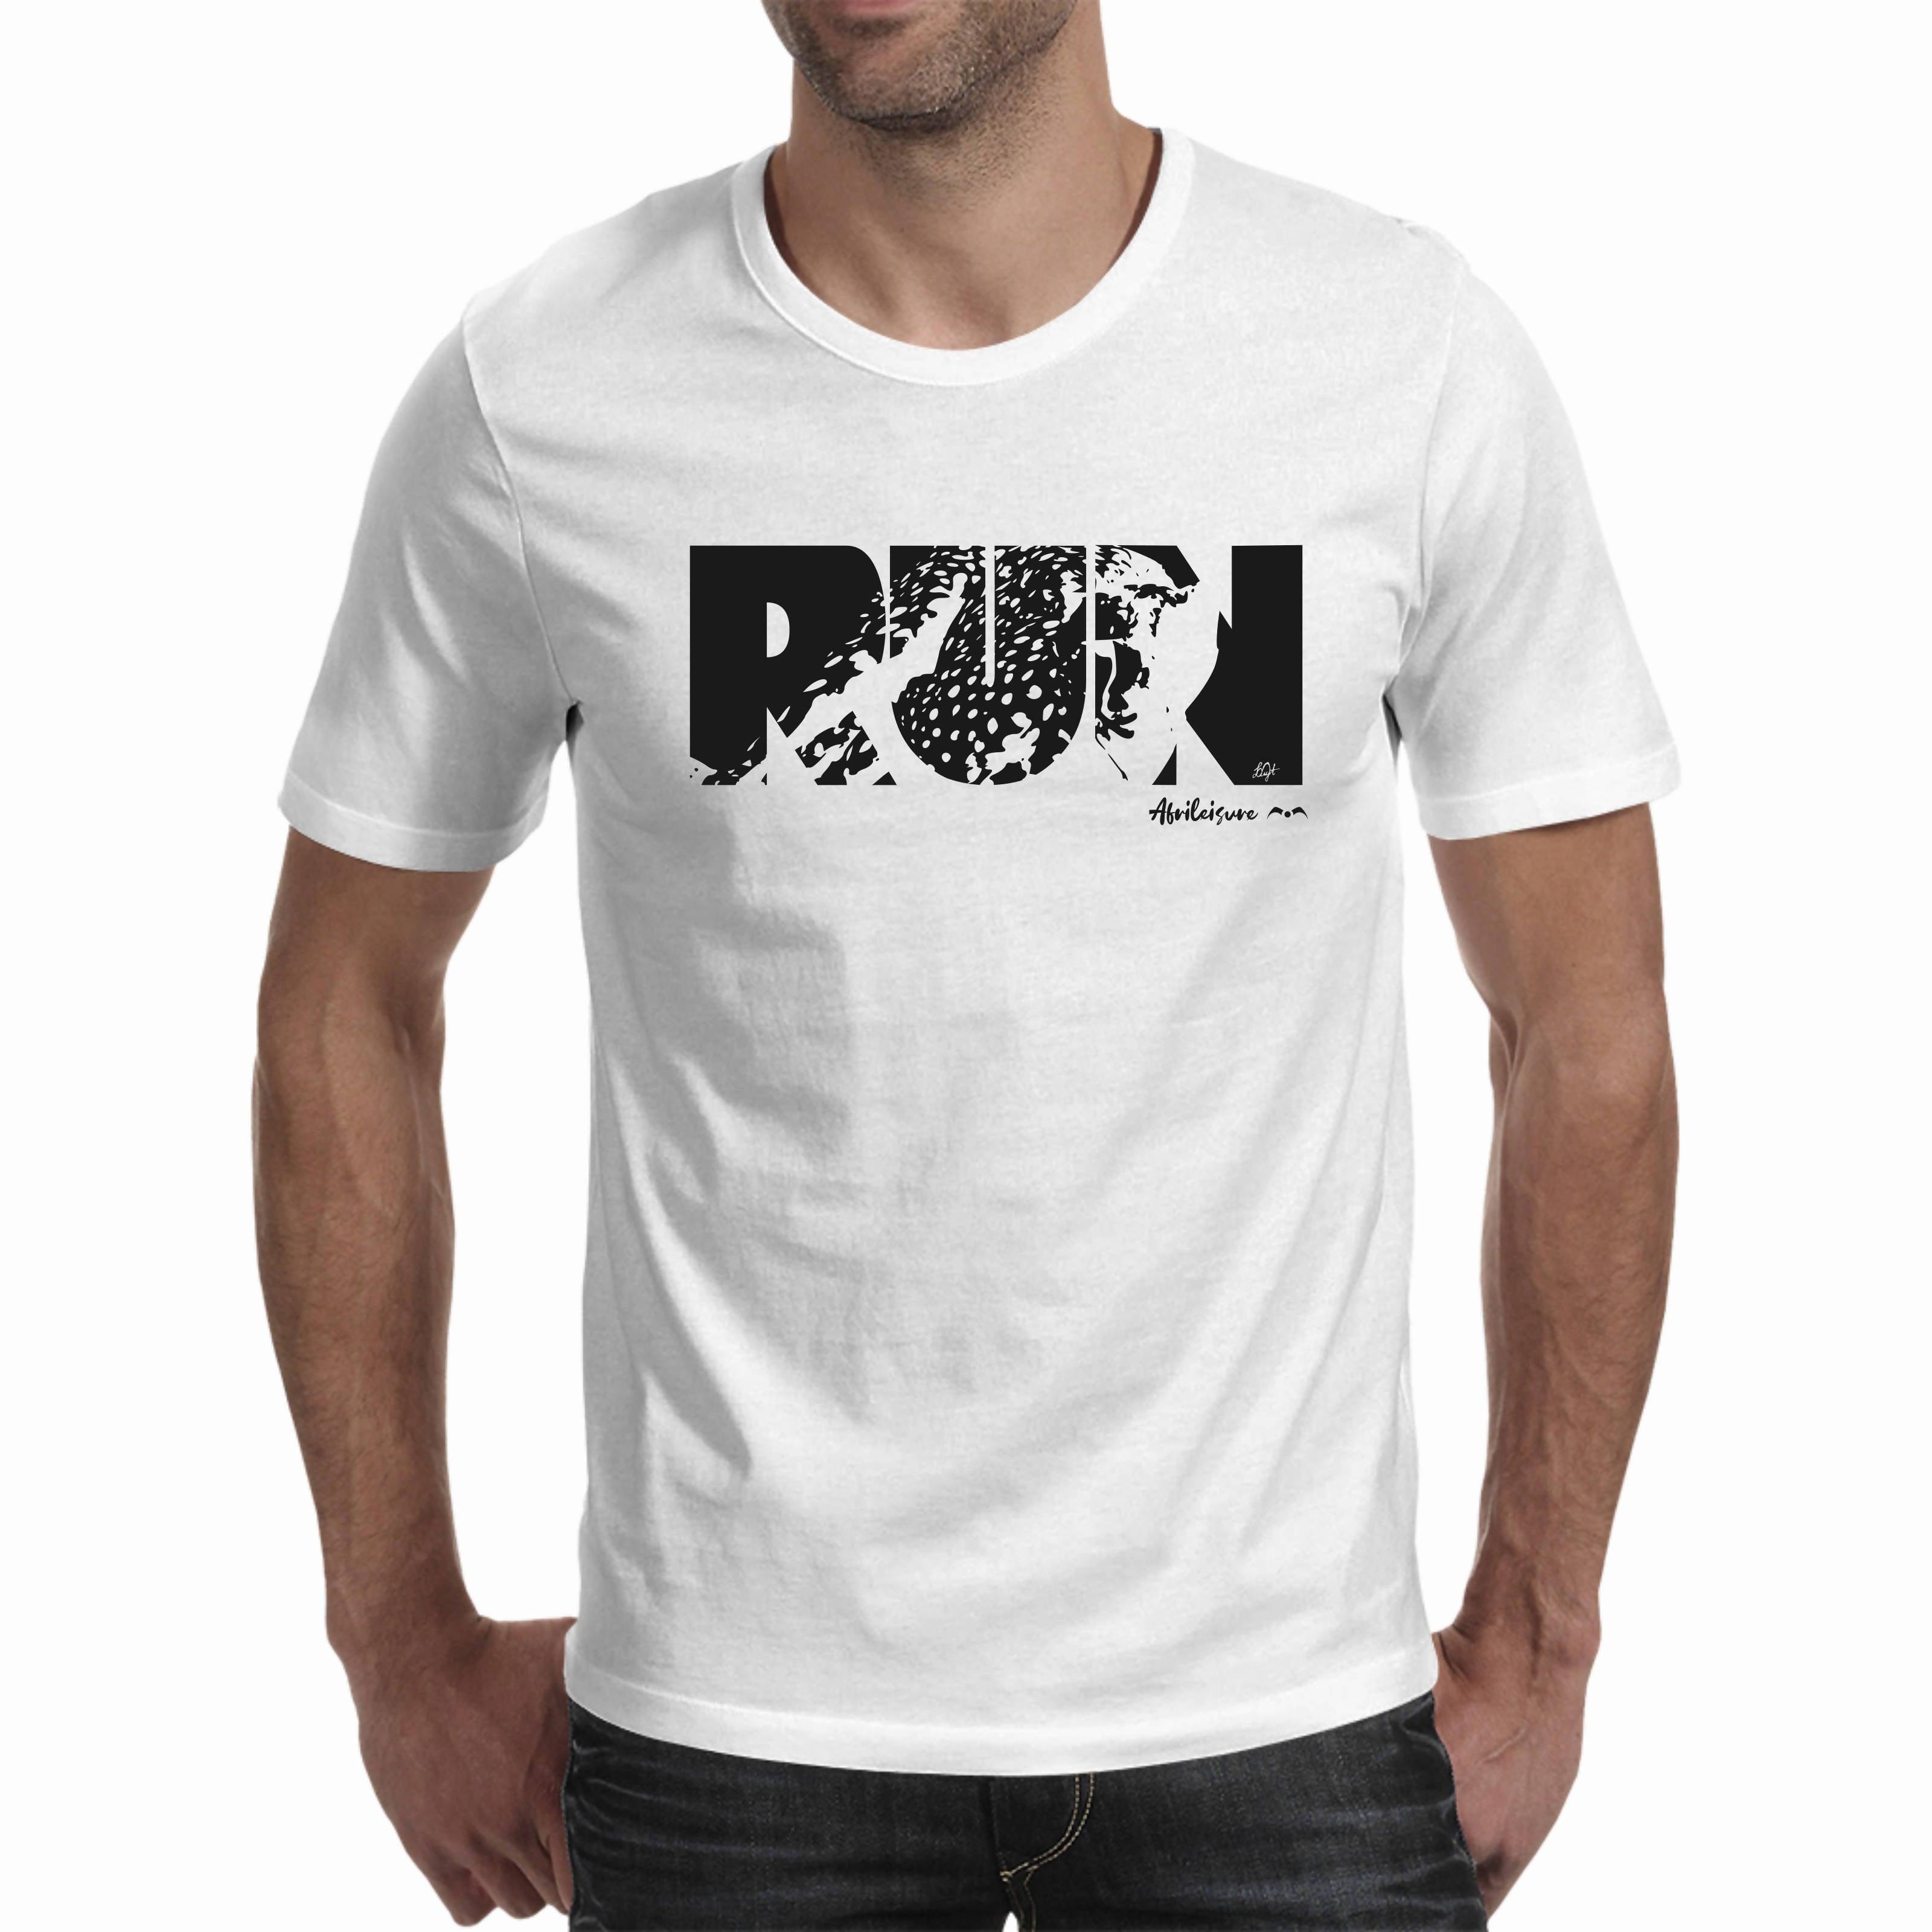 Run Men's T-shirt (Afrileisure)